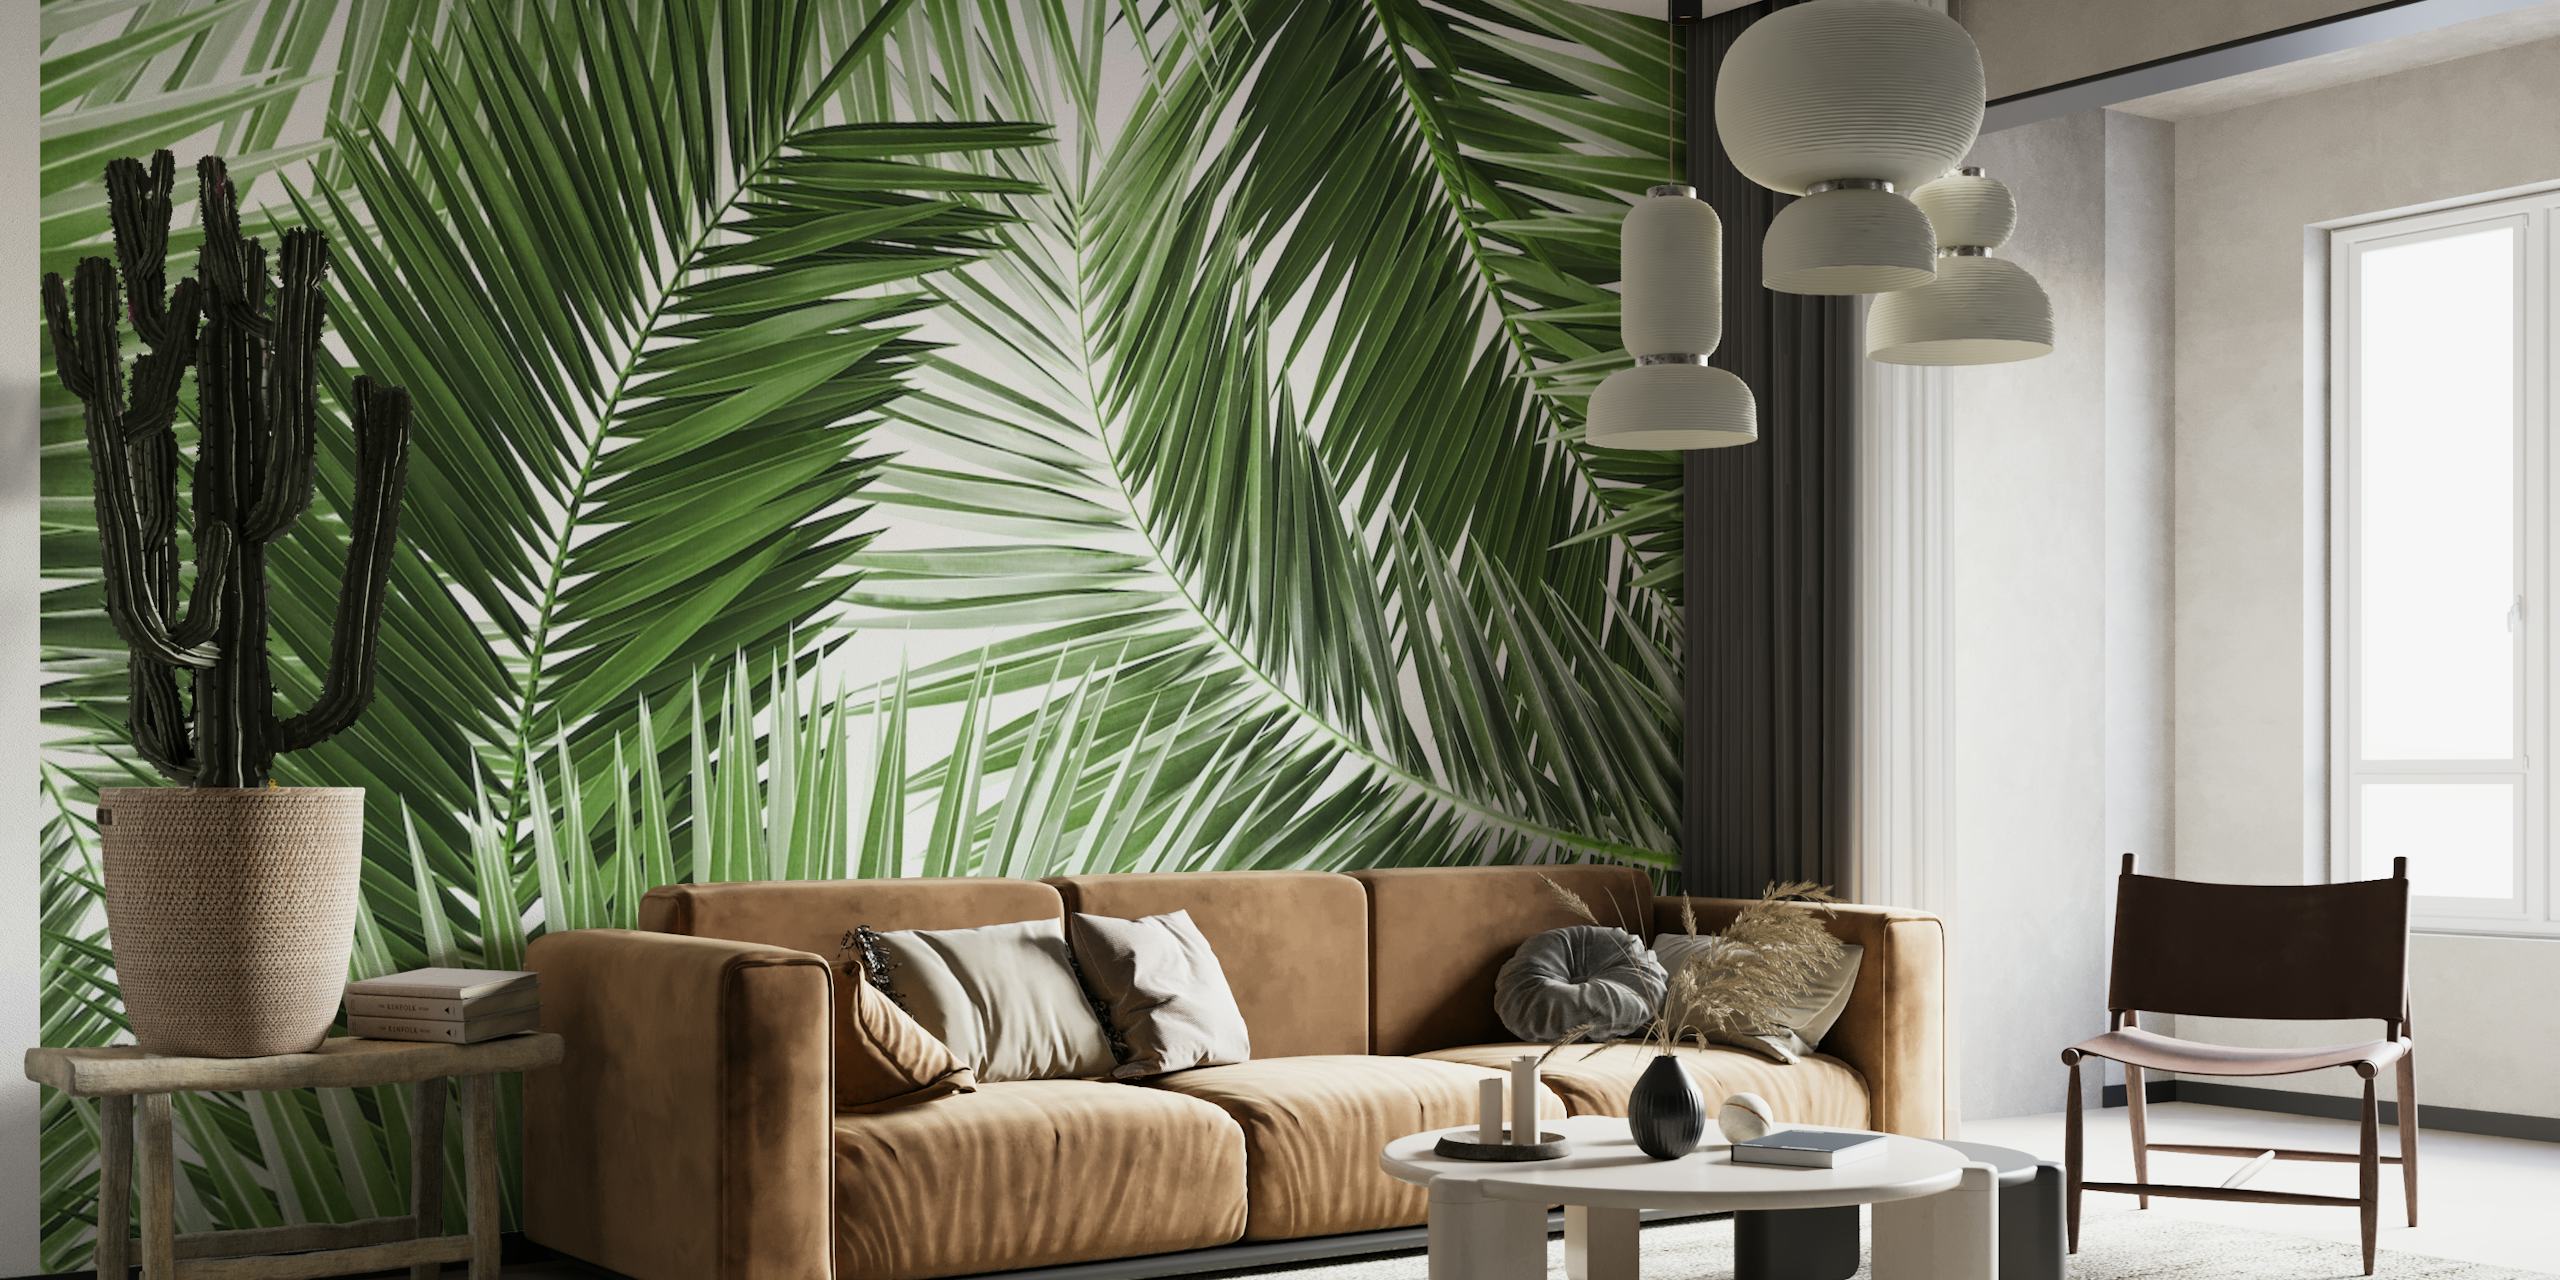 Tapete mit üppigem grünem Palmenblättermuster für die Inneneinrichtung